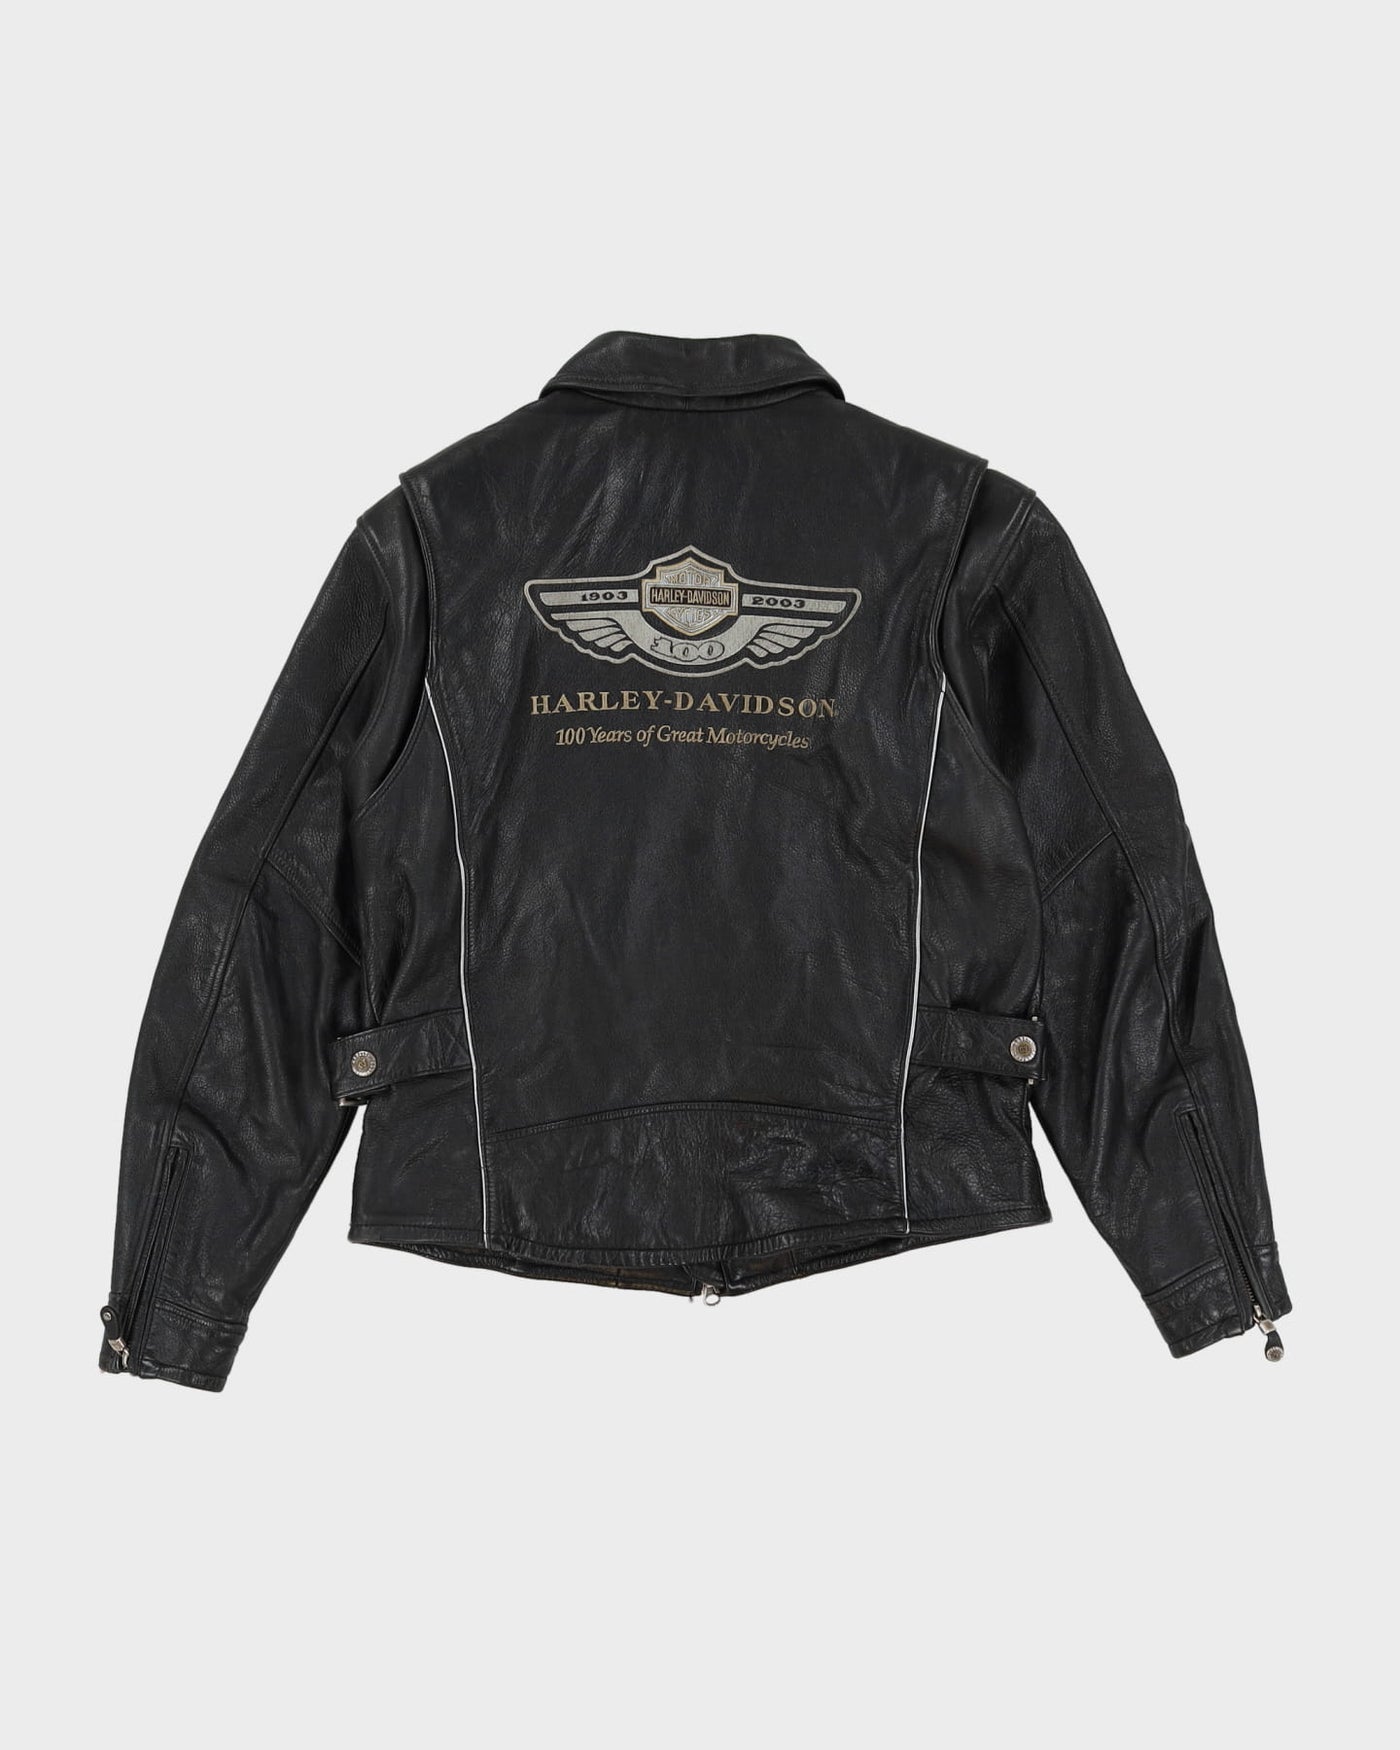 Harley Davidson Black Biker Style Leather Jacket - M